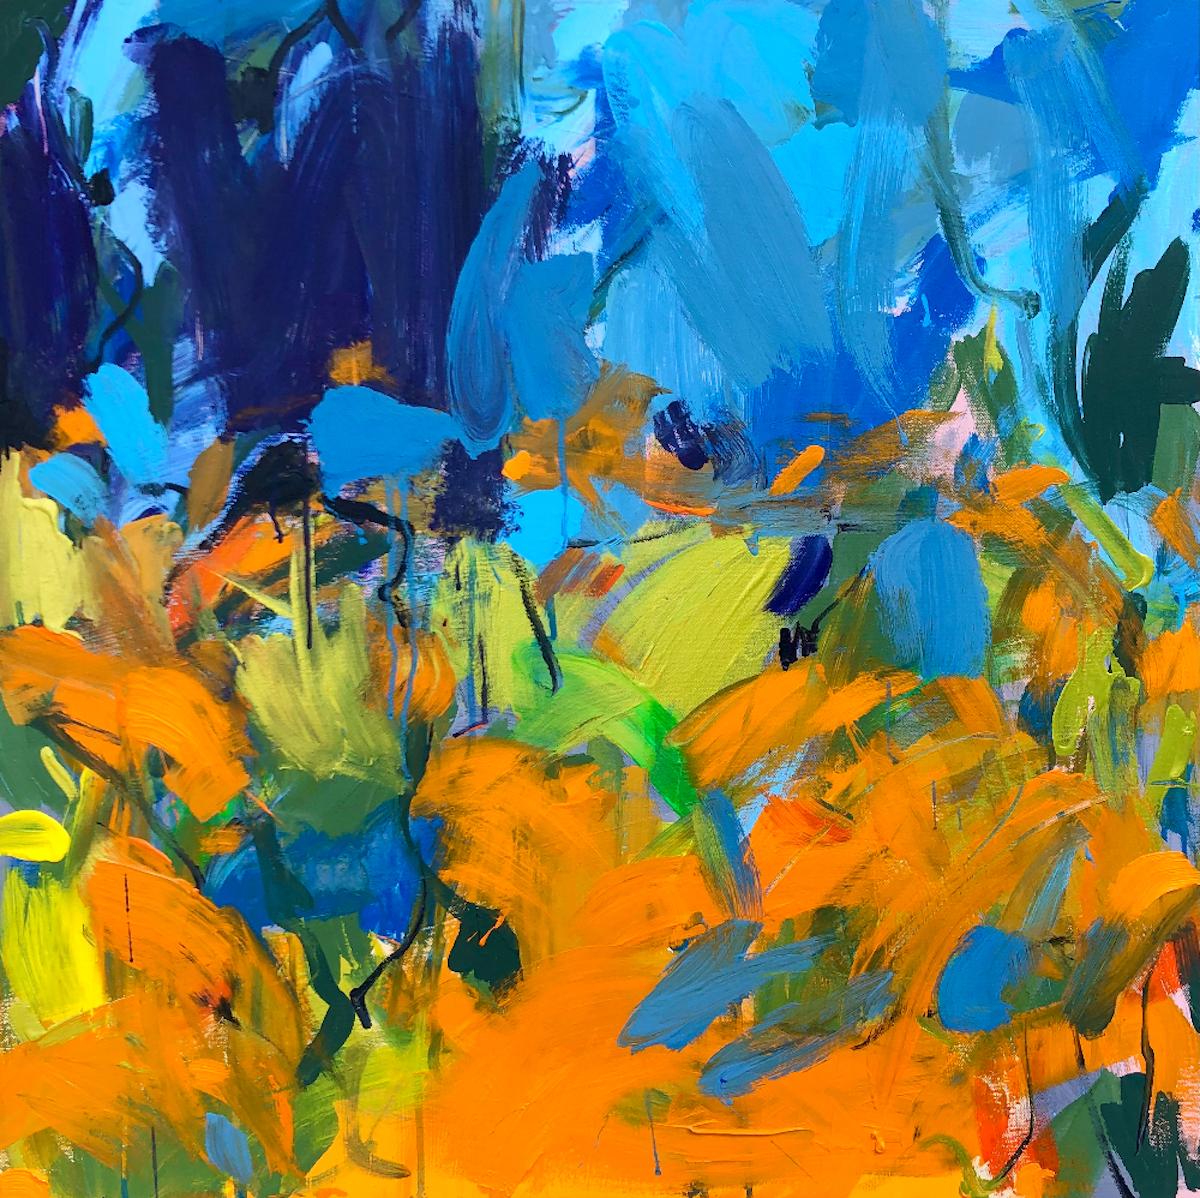 Sasha Getsko Landscape Painting - Aquilegias and Orange Geum, Abstract Blue and Orange Floral Painting, Bright Art